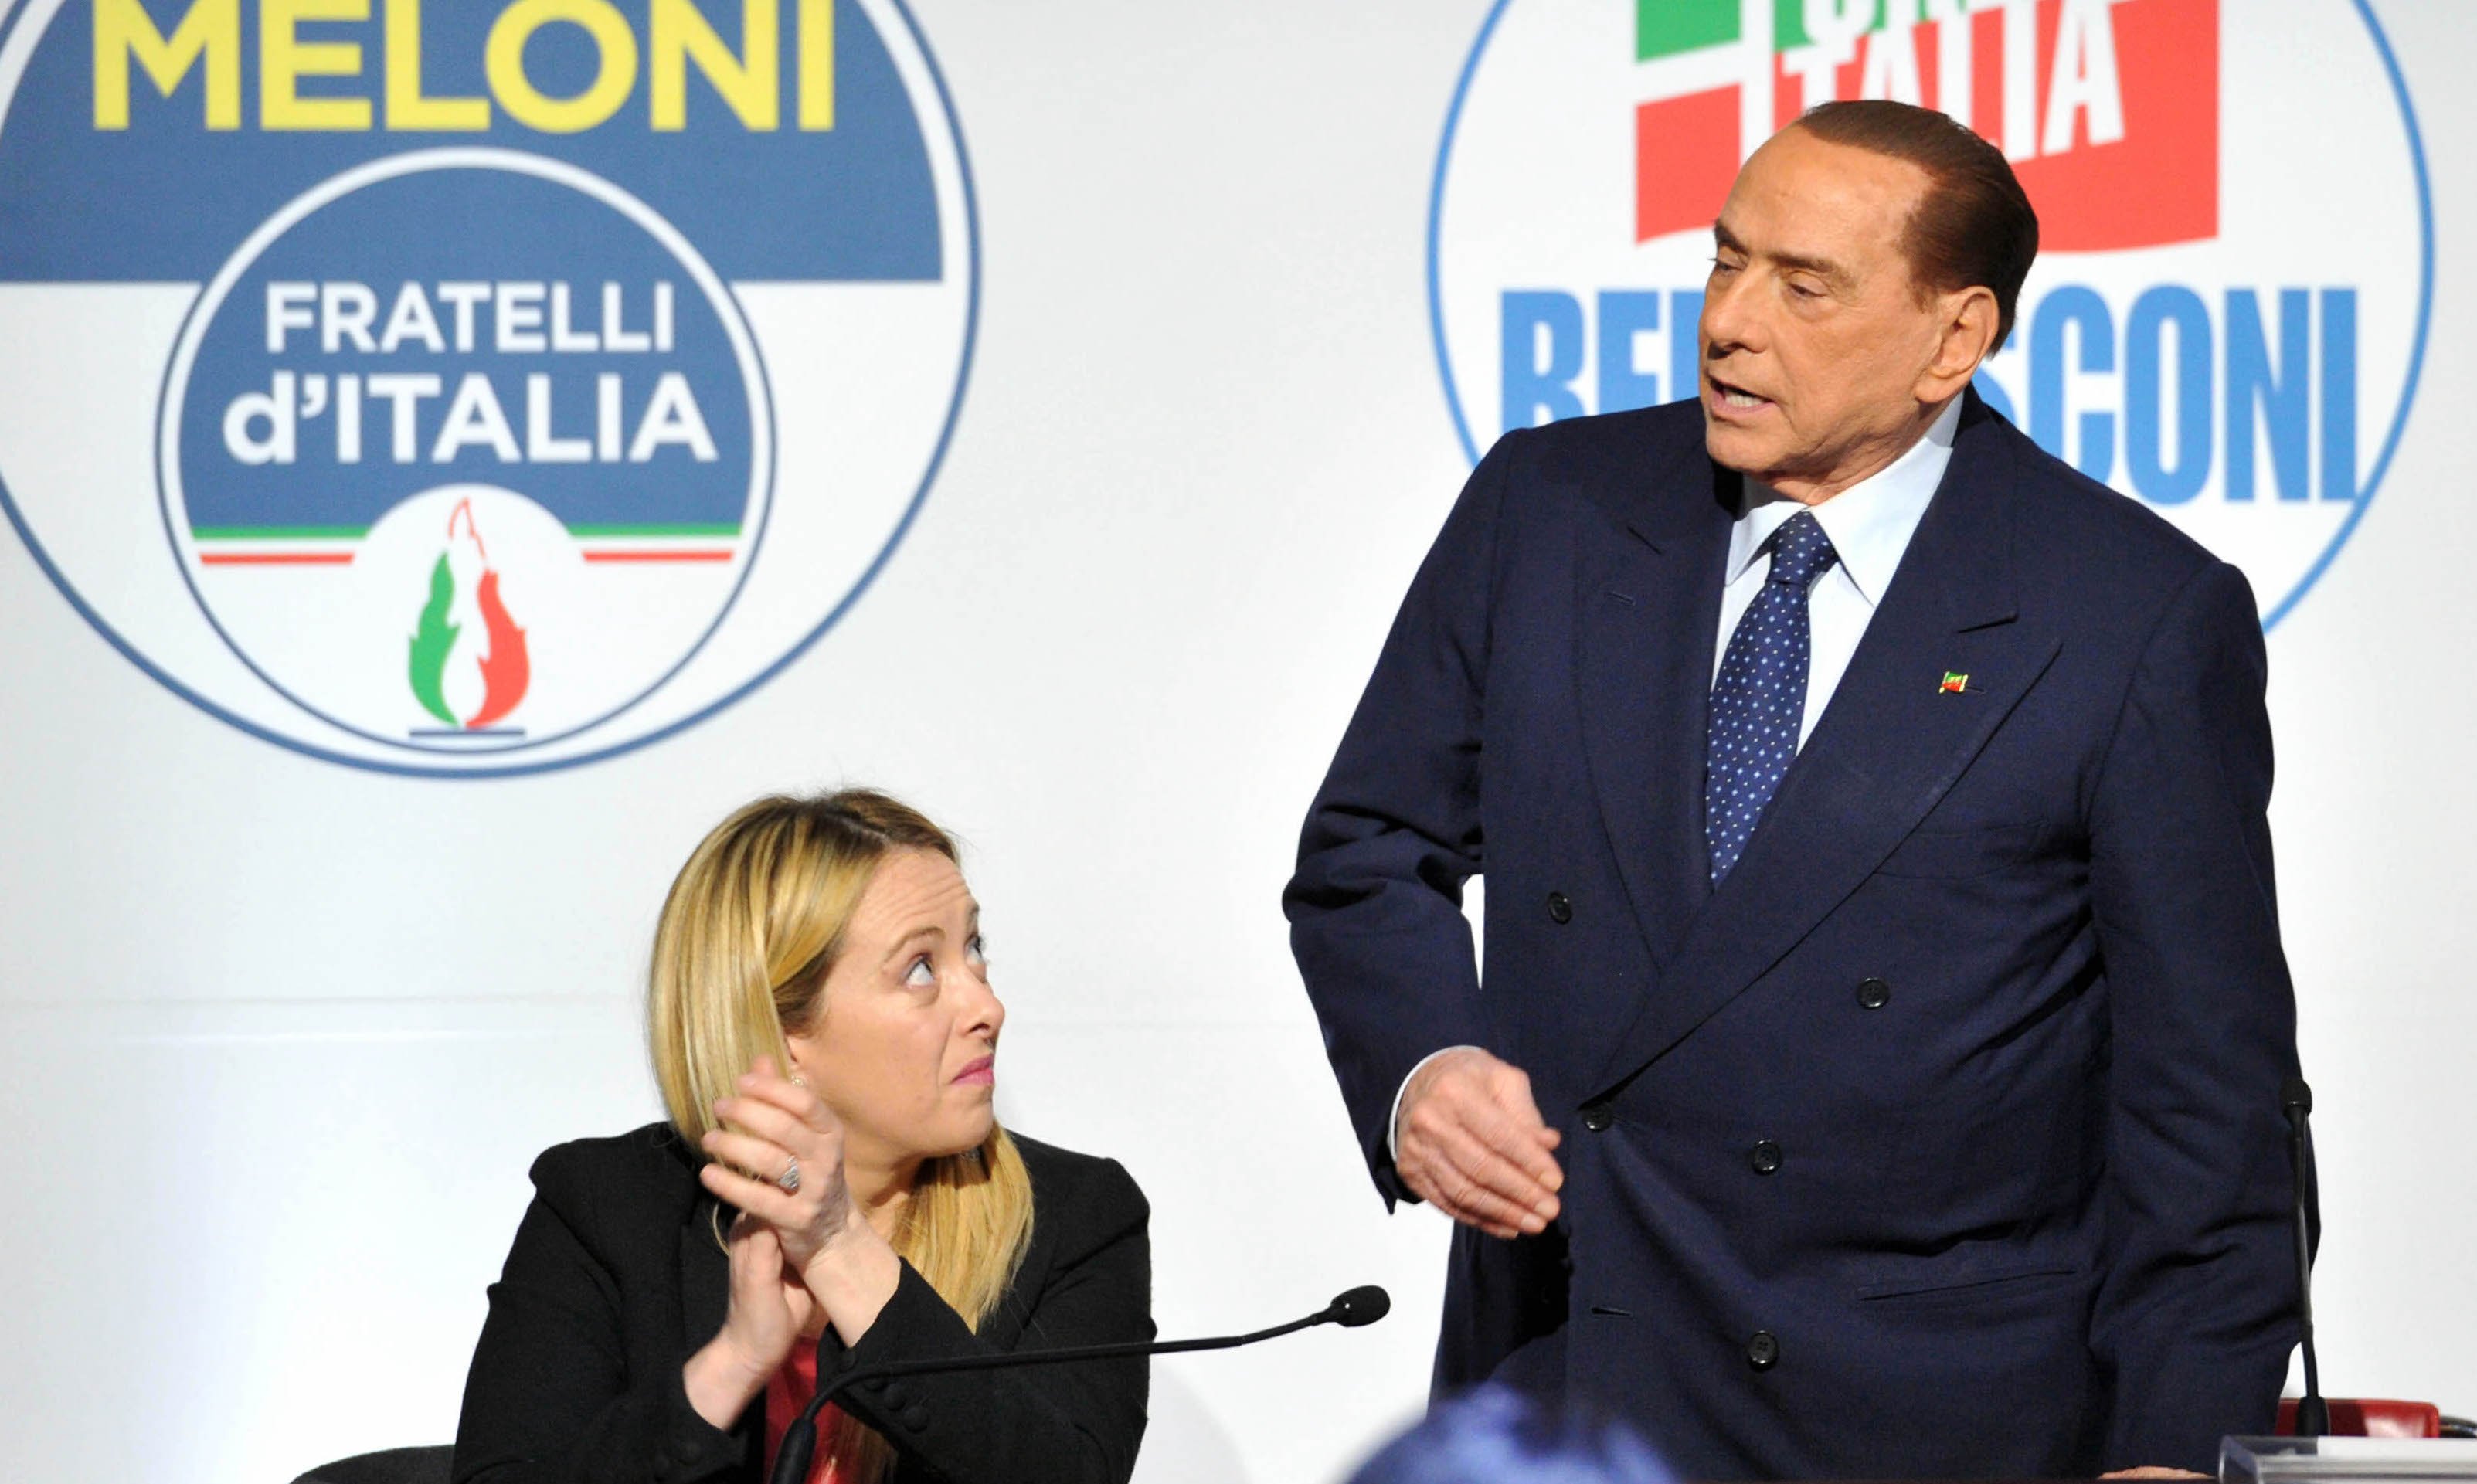 Incontro Berlusconi Meloni